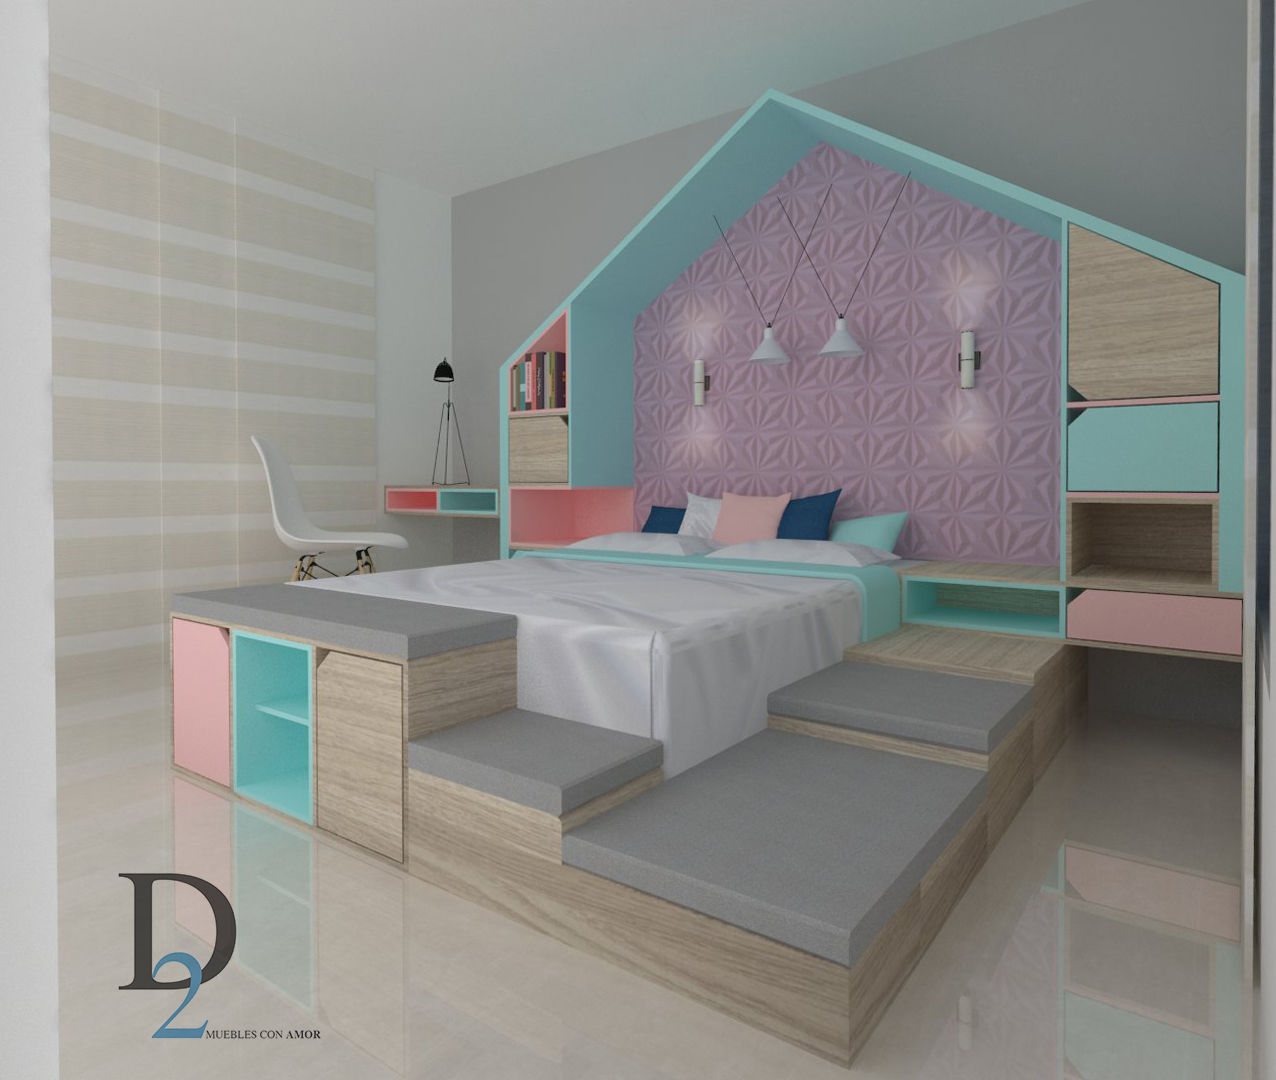 Diseño interior y mobiliario casa familiar , D2 ARQUITECTURA Y MOBILIARIO D2 ARQUITECTURA Y MOBILIARIO Girls Bedroom Wood Wood effect